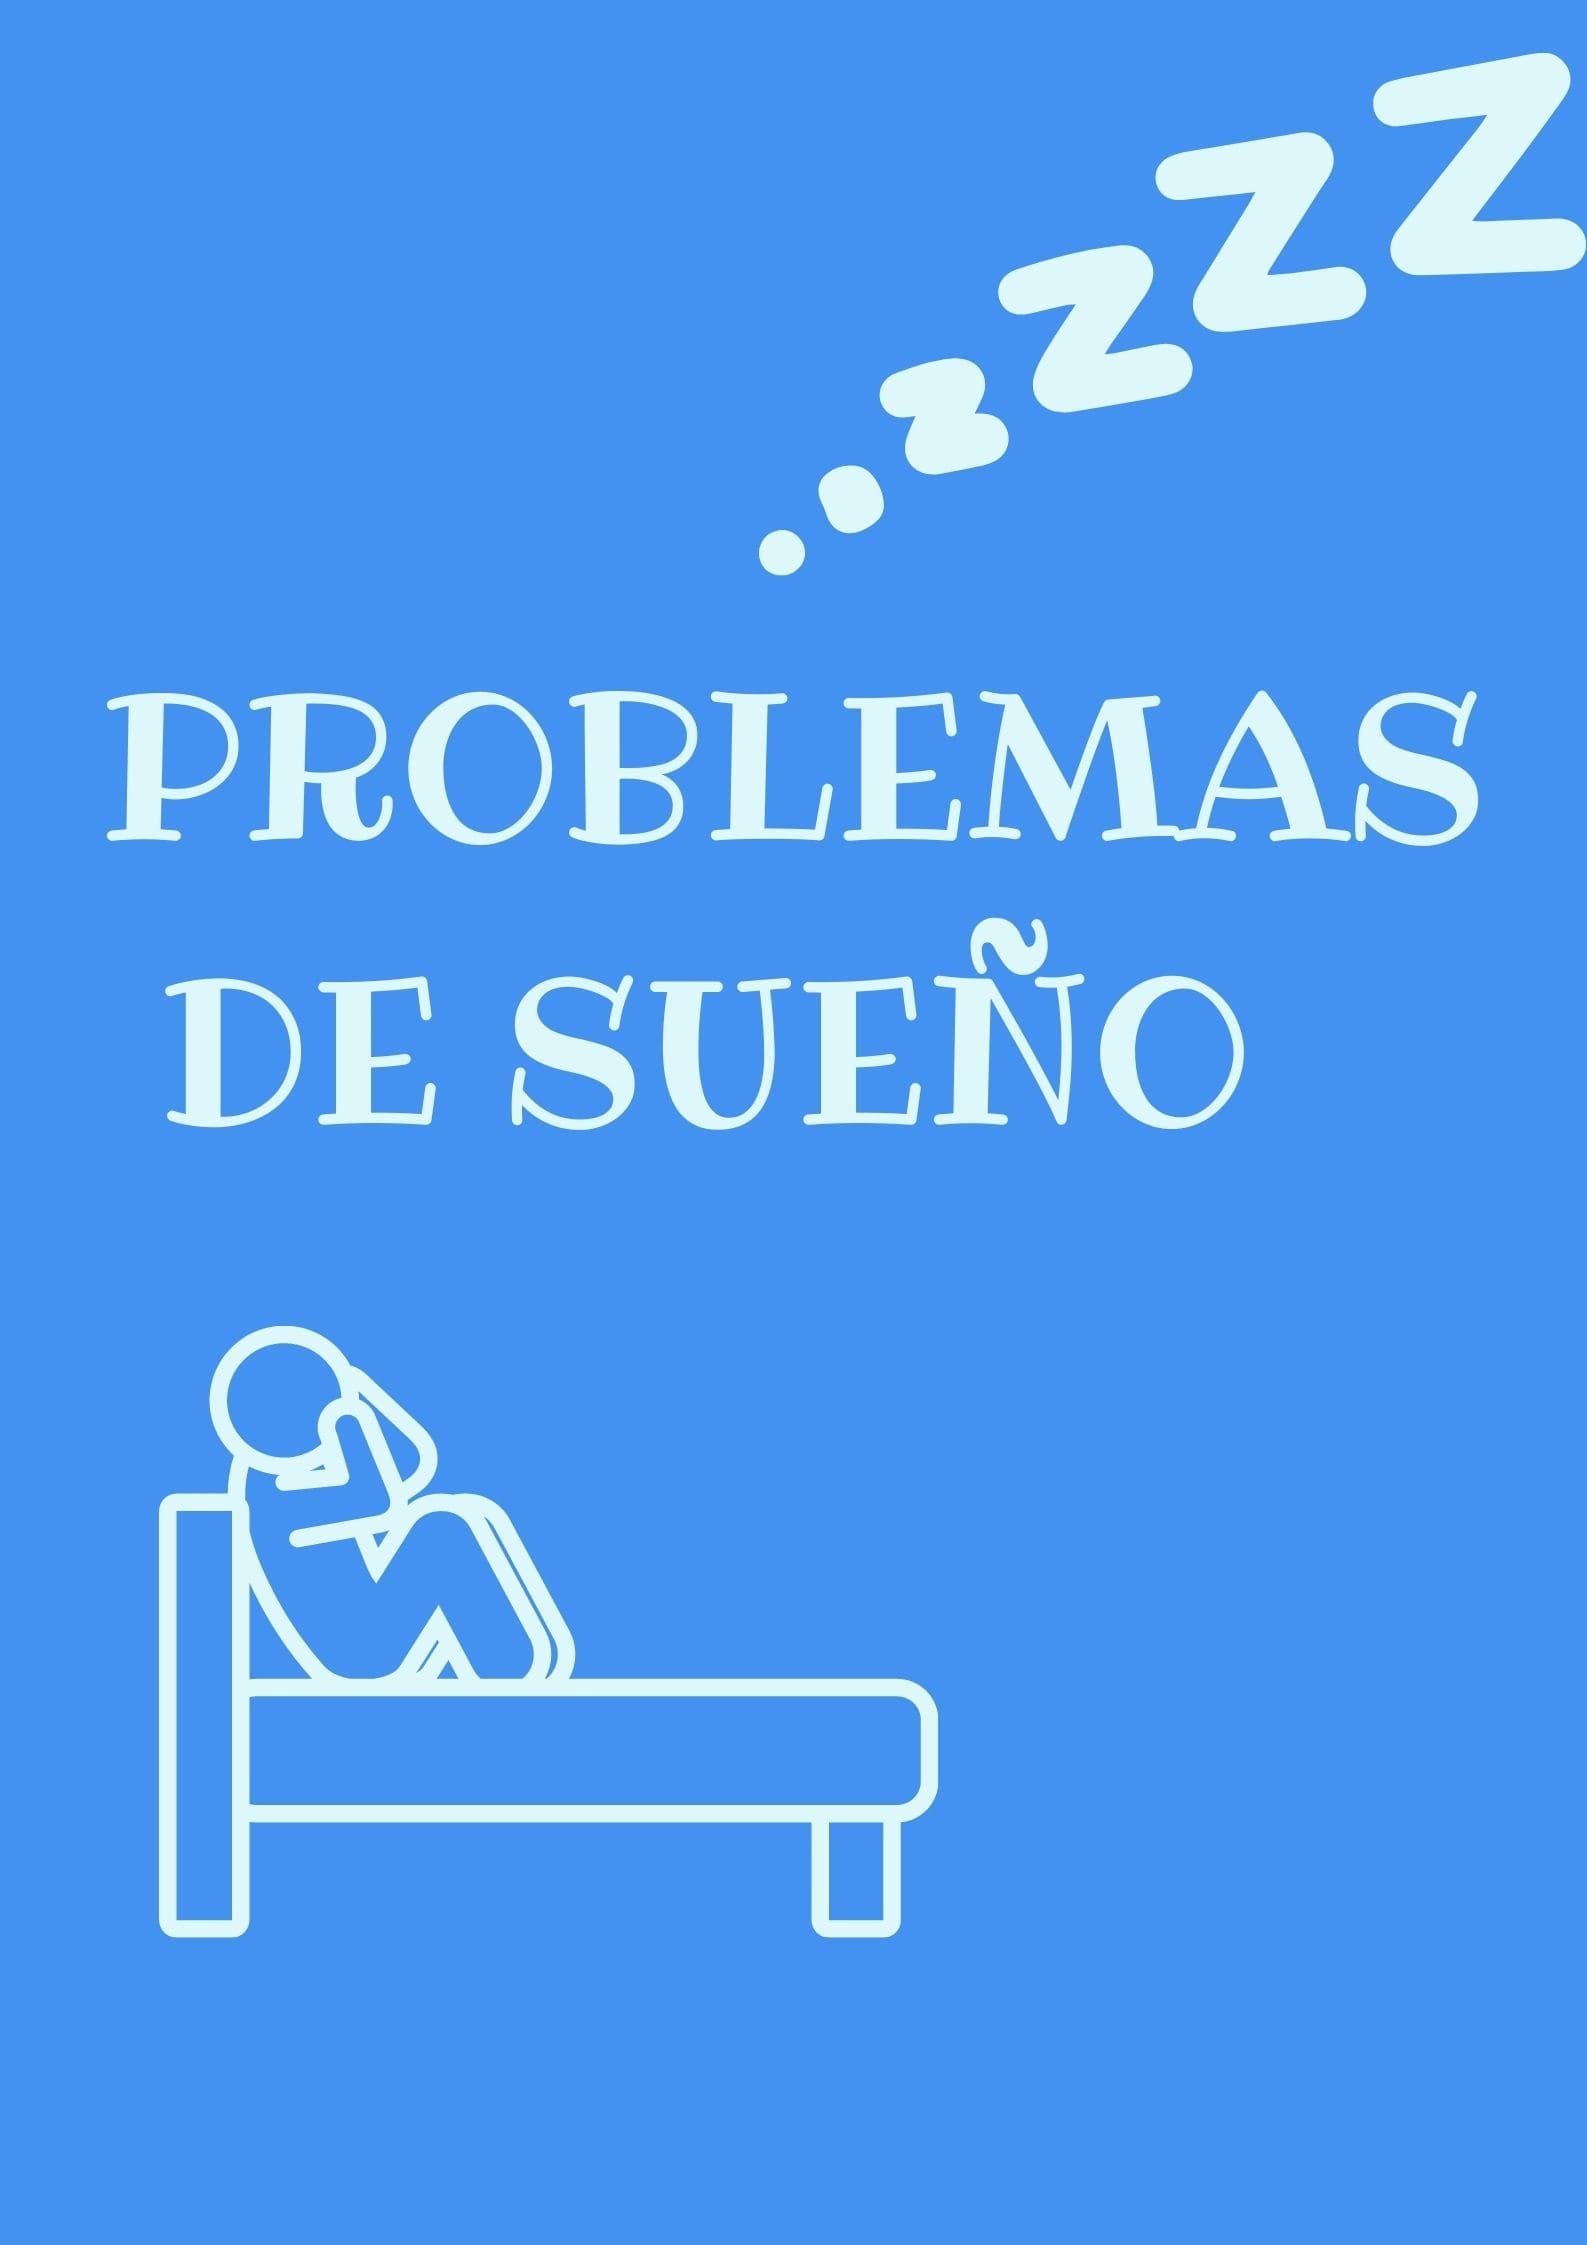 PROBLEMAS DEL SUEÑO EN AUTISMO.jpg